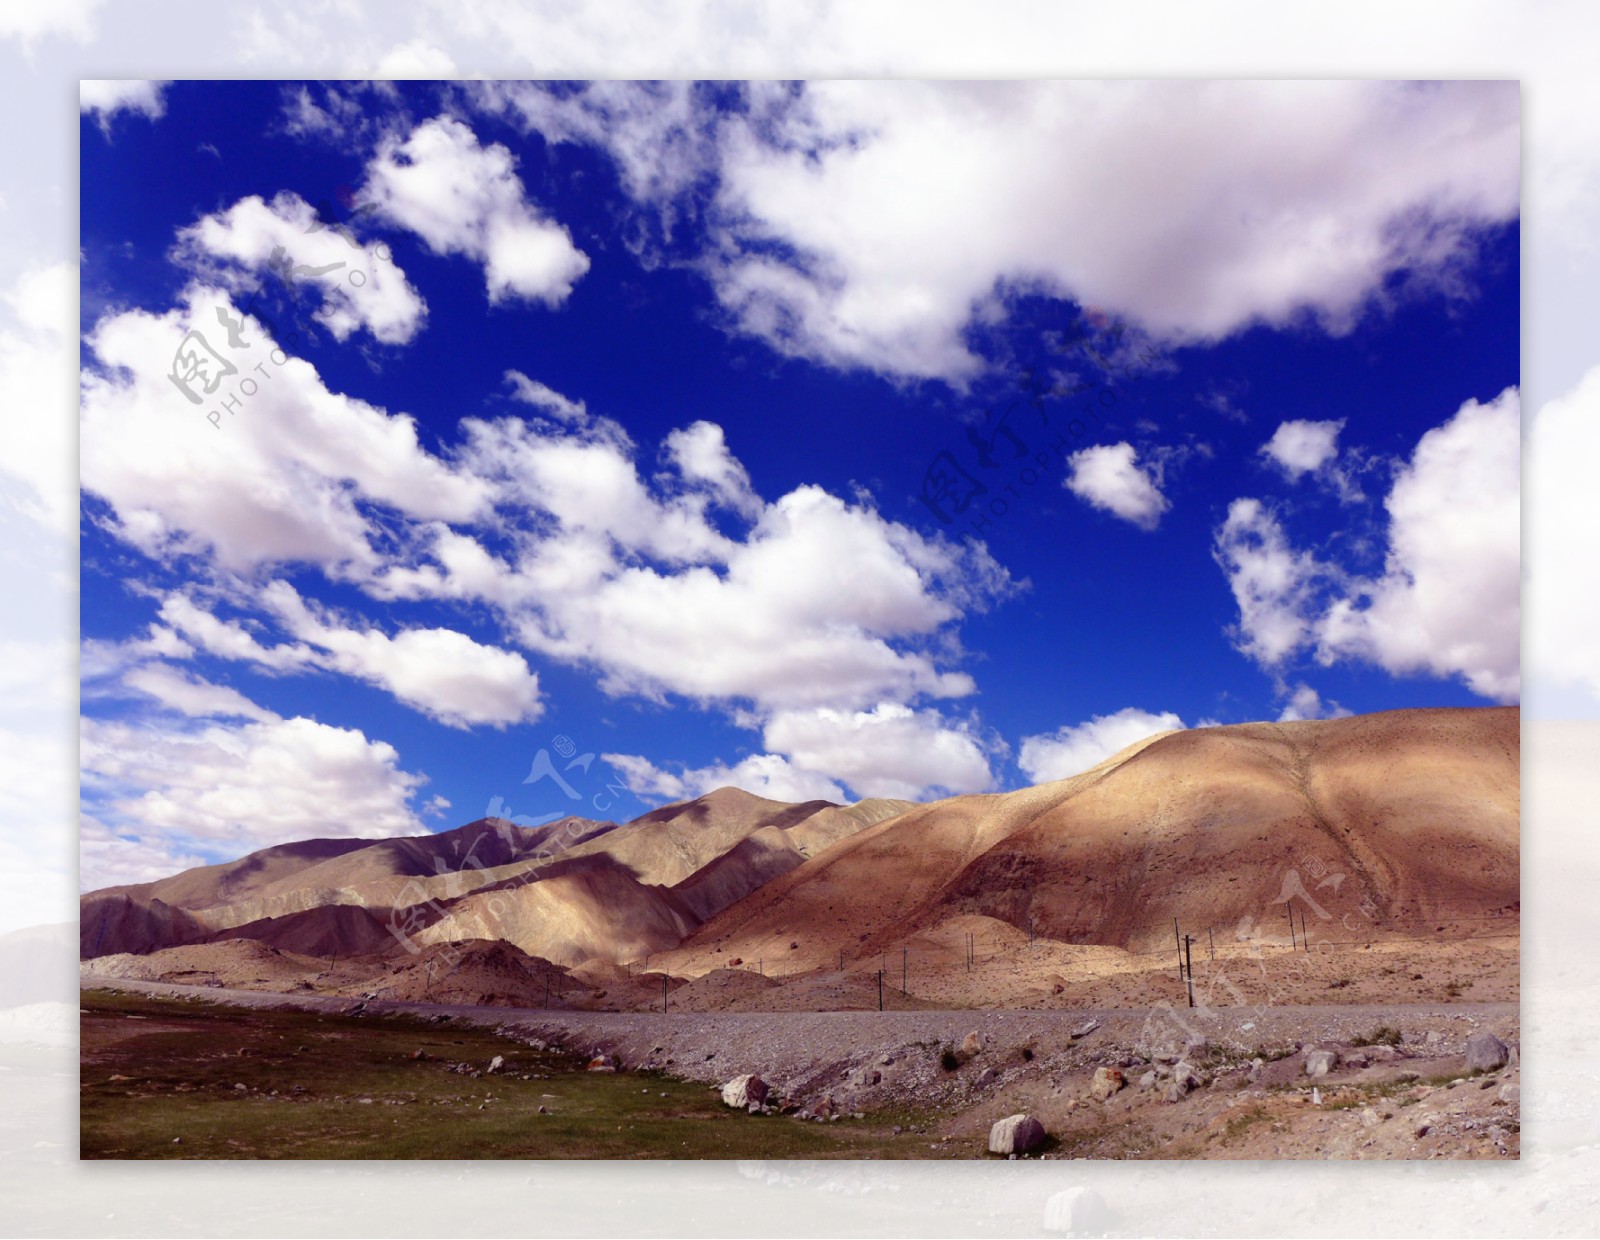 南疆美景图片